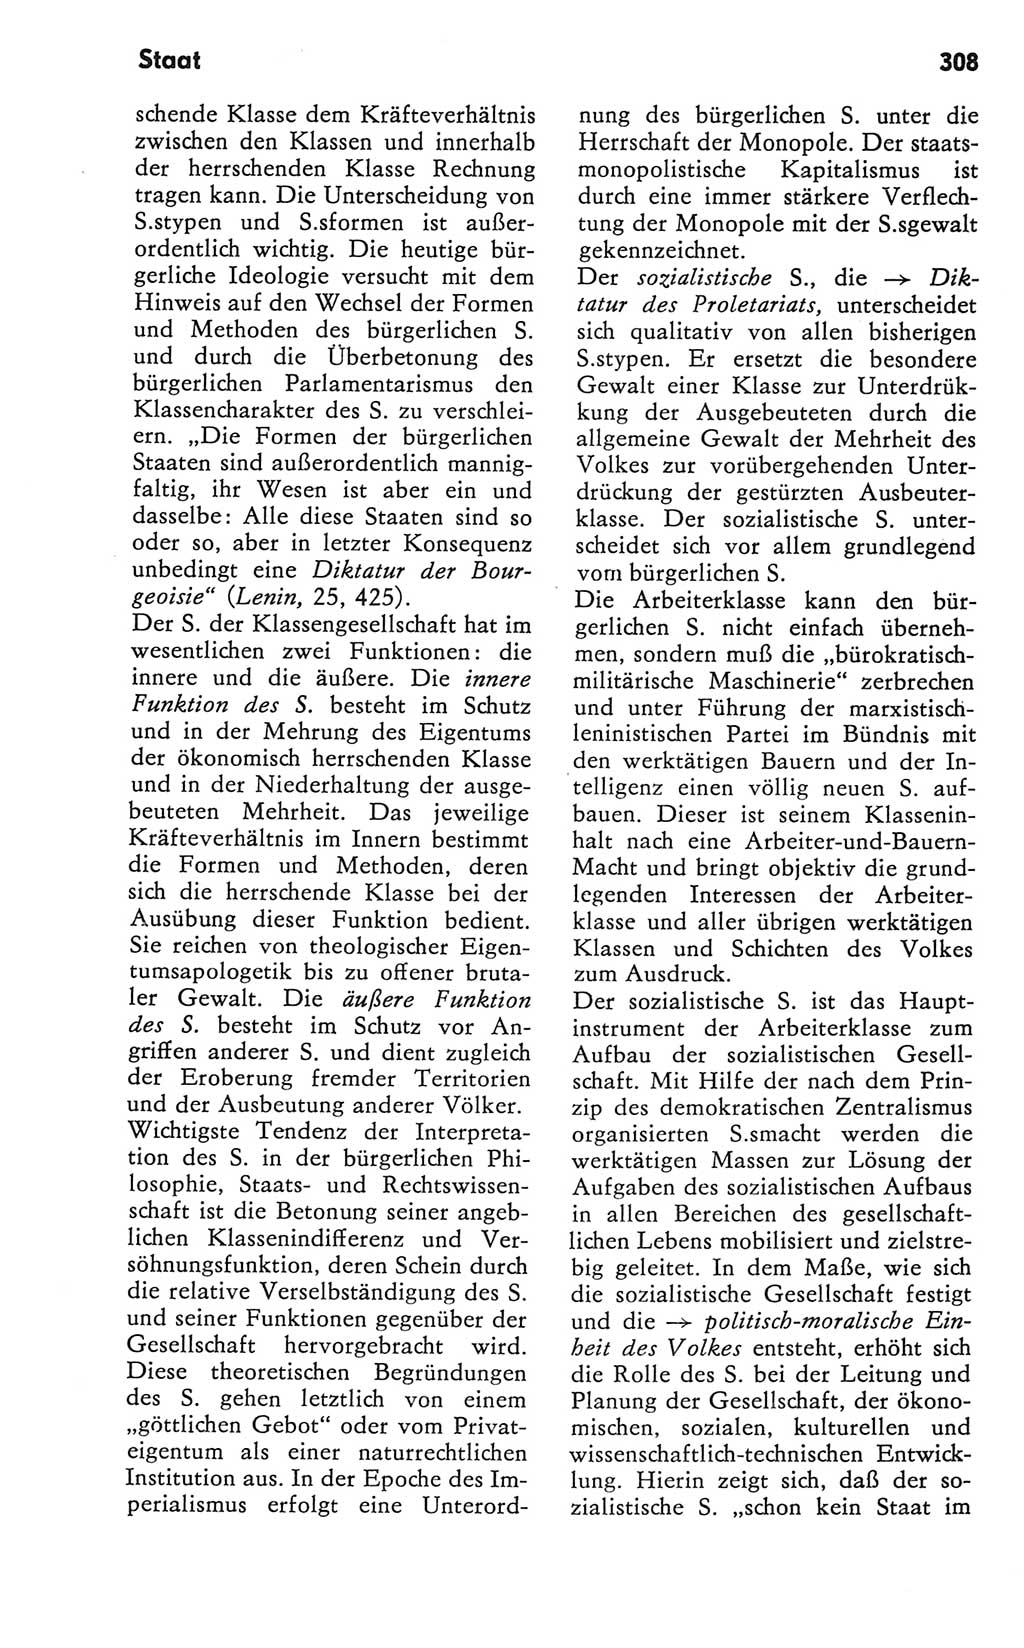 Kleines Wörterbuch der marxistisch-leninistischen Philosophie [Deutsche Demokratische Republik (DDR)] 1981, Seite 308 (Kl. Wb. ML Phil. DDR 1981, S. 308)